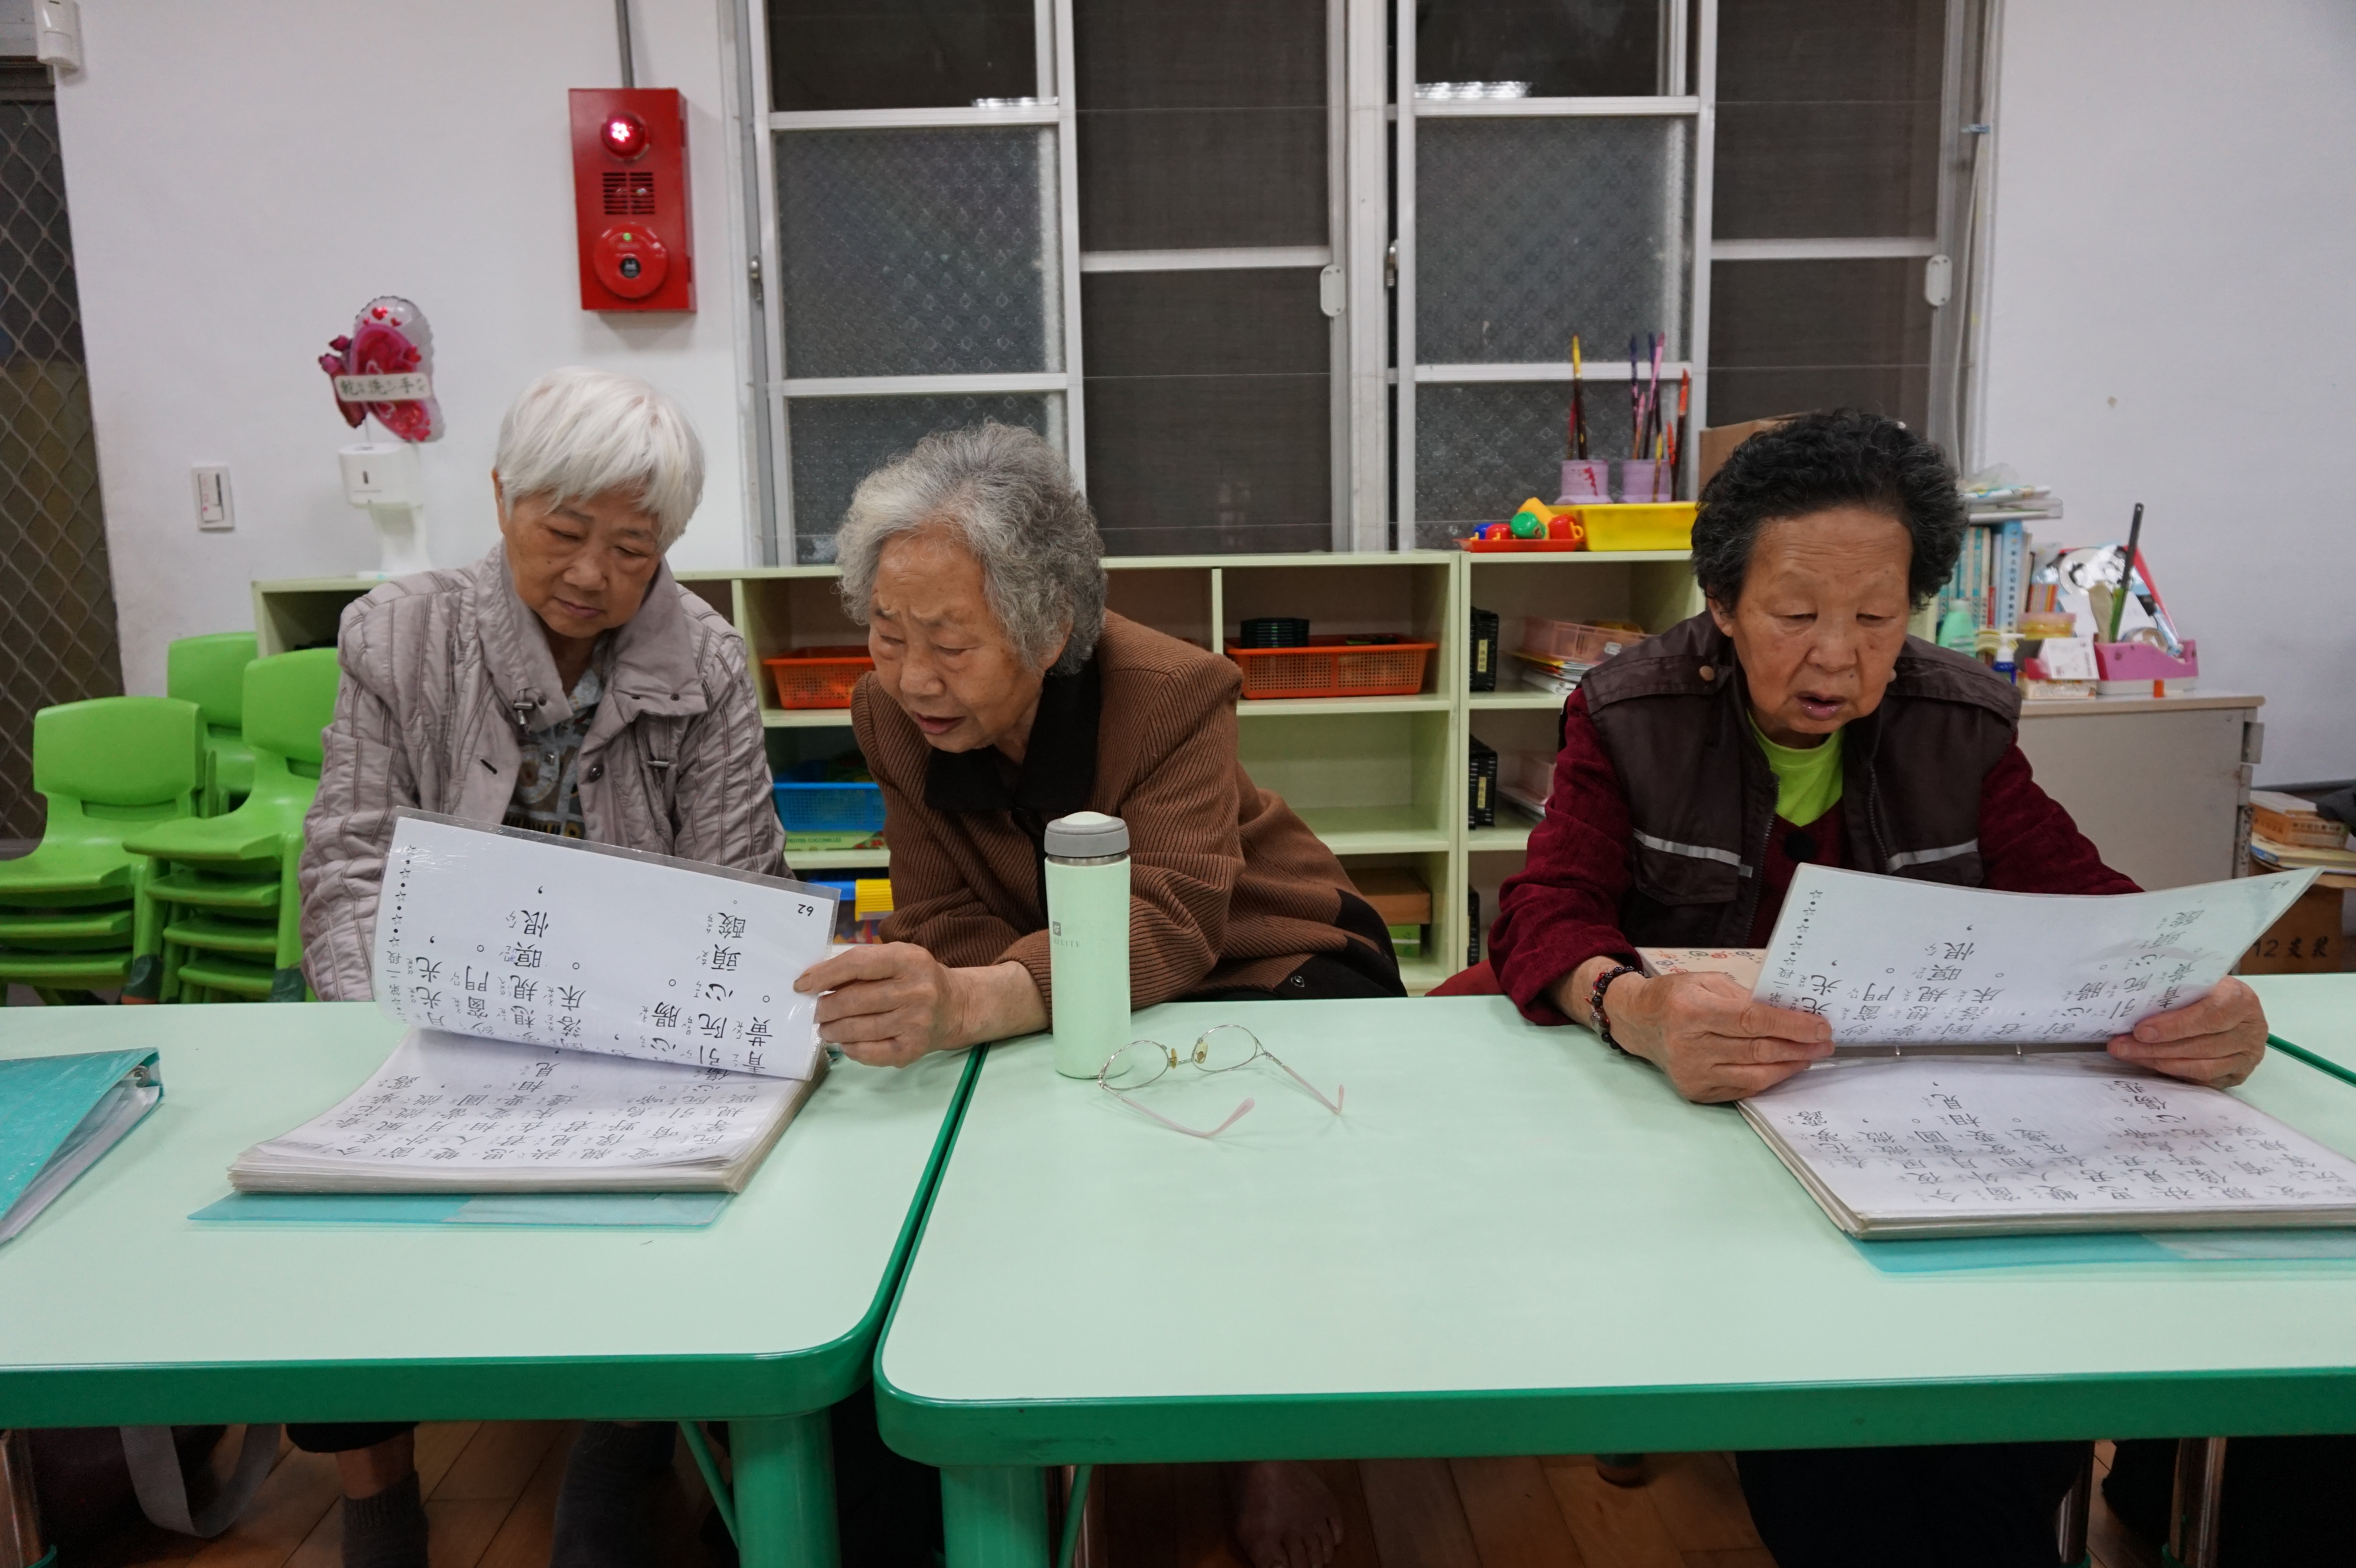 4.坪林區樂齡學習中心茶歌相褒課程學員一同傳承茶文化